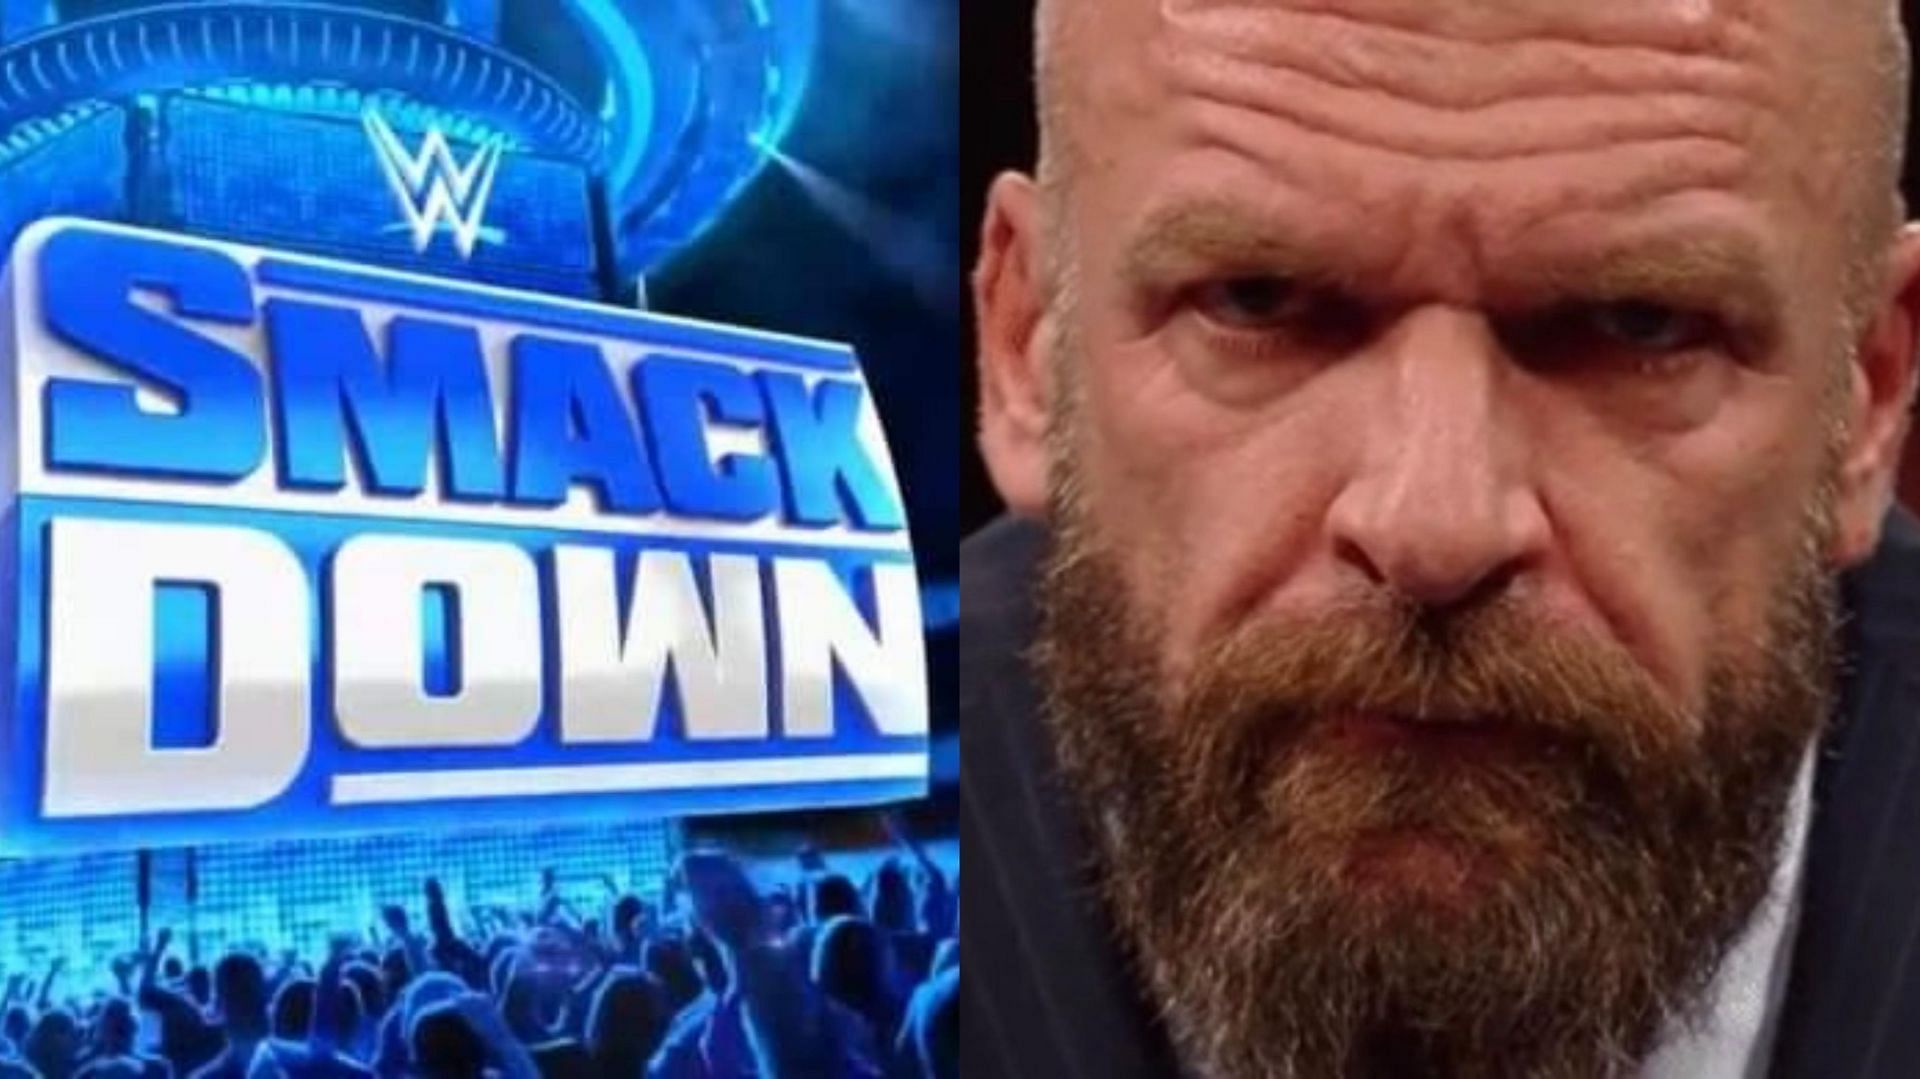 SmackDown logo (left), Triple H (right)